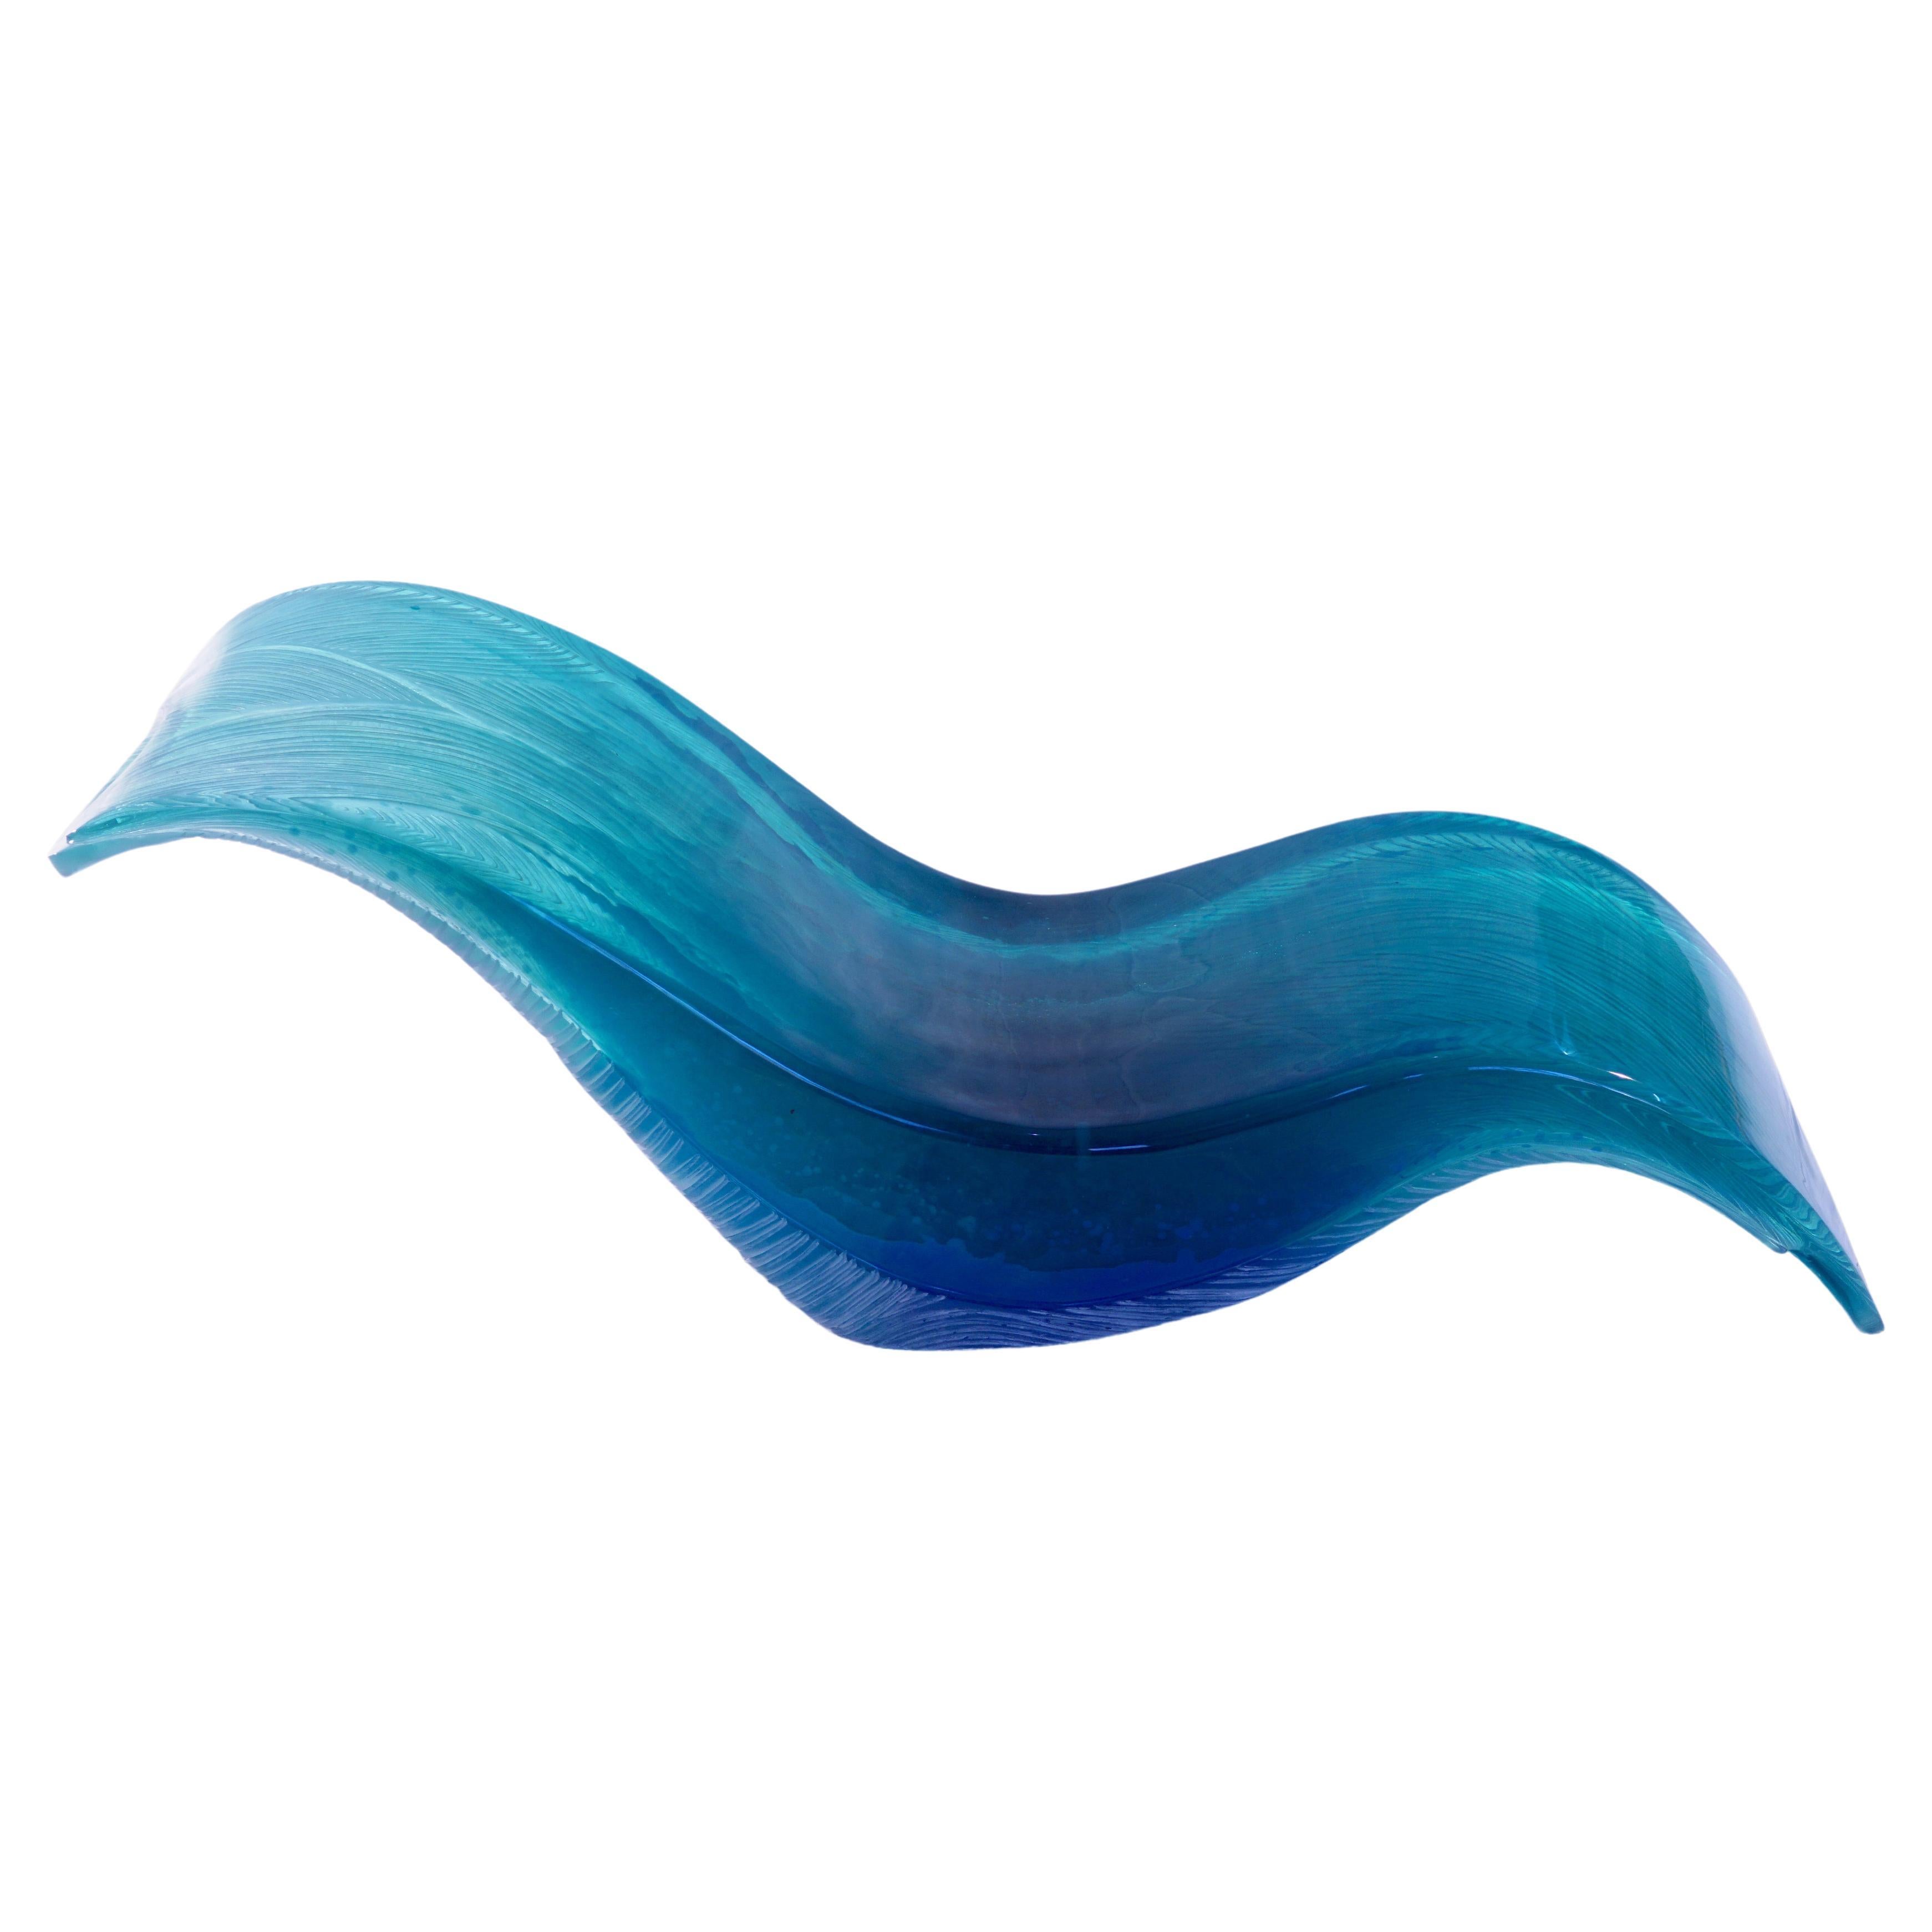 Wave Lounge d'Eduard Locota. Conception sculpturale en verre acrylique bleu turquoise